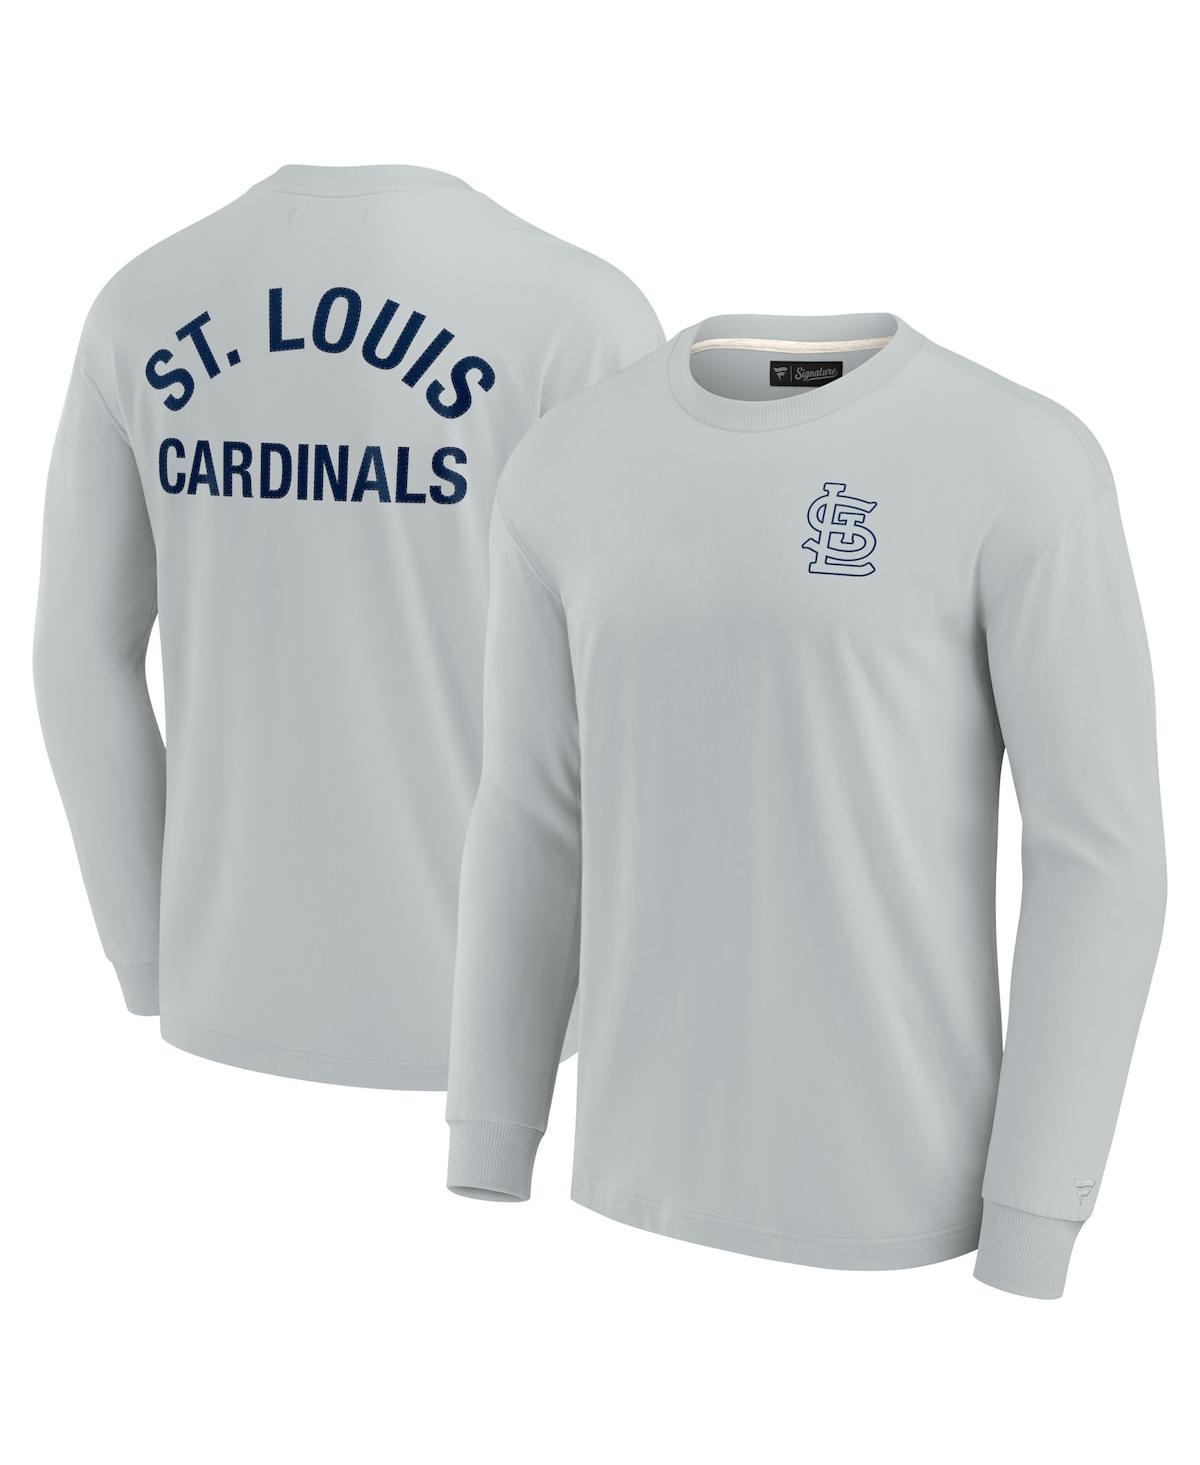 Fanatics Signature Men's And Women's Gray St. Louis Cardinals Super Soft Long  Sleeve T-shirt